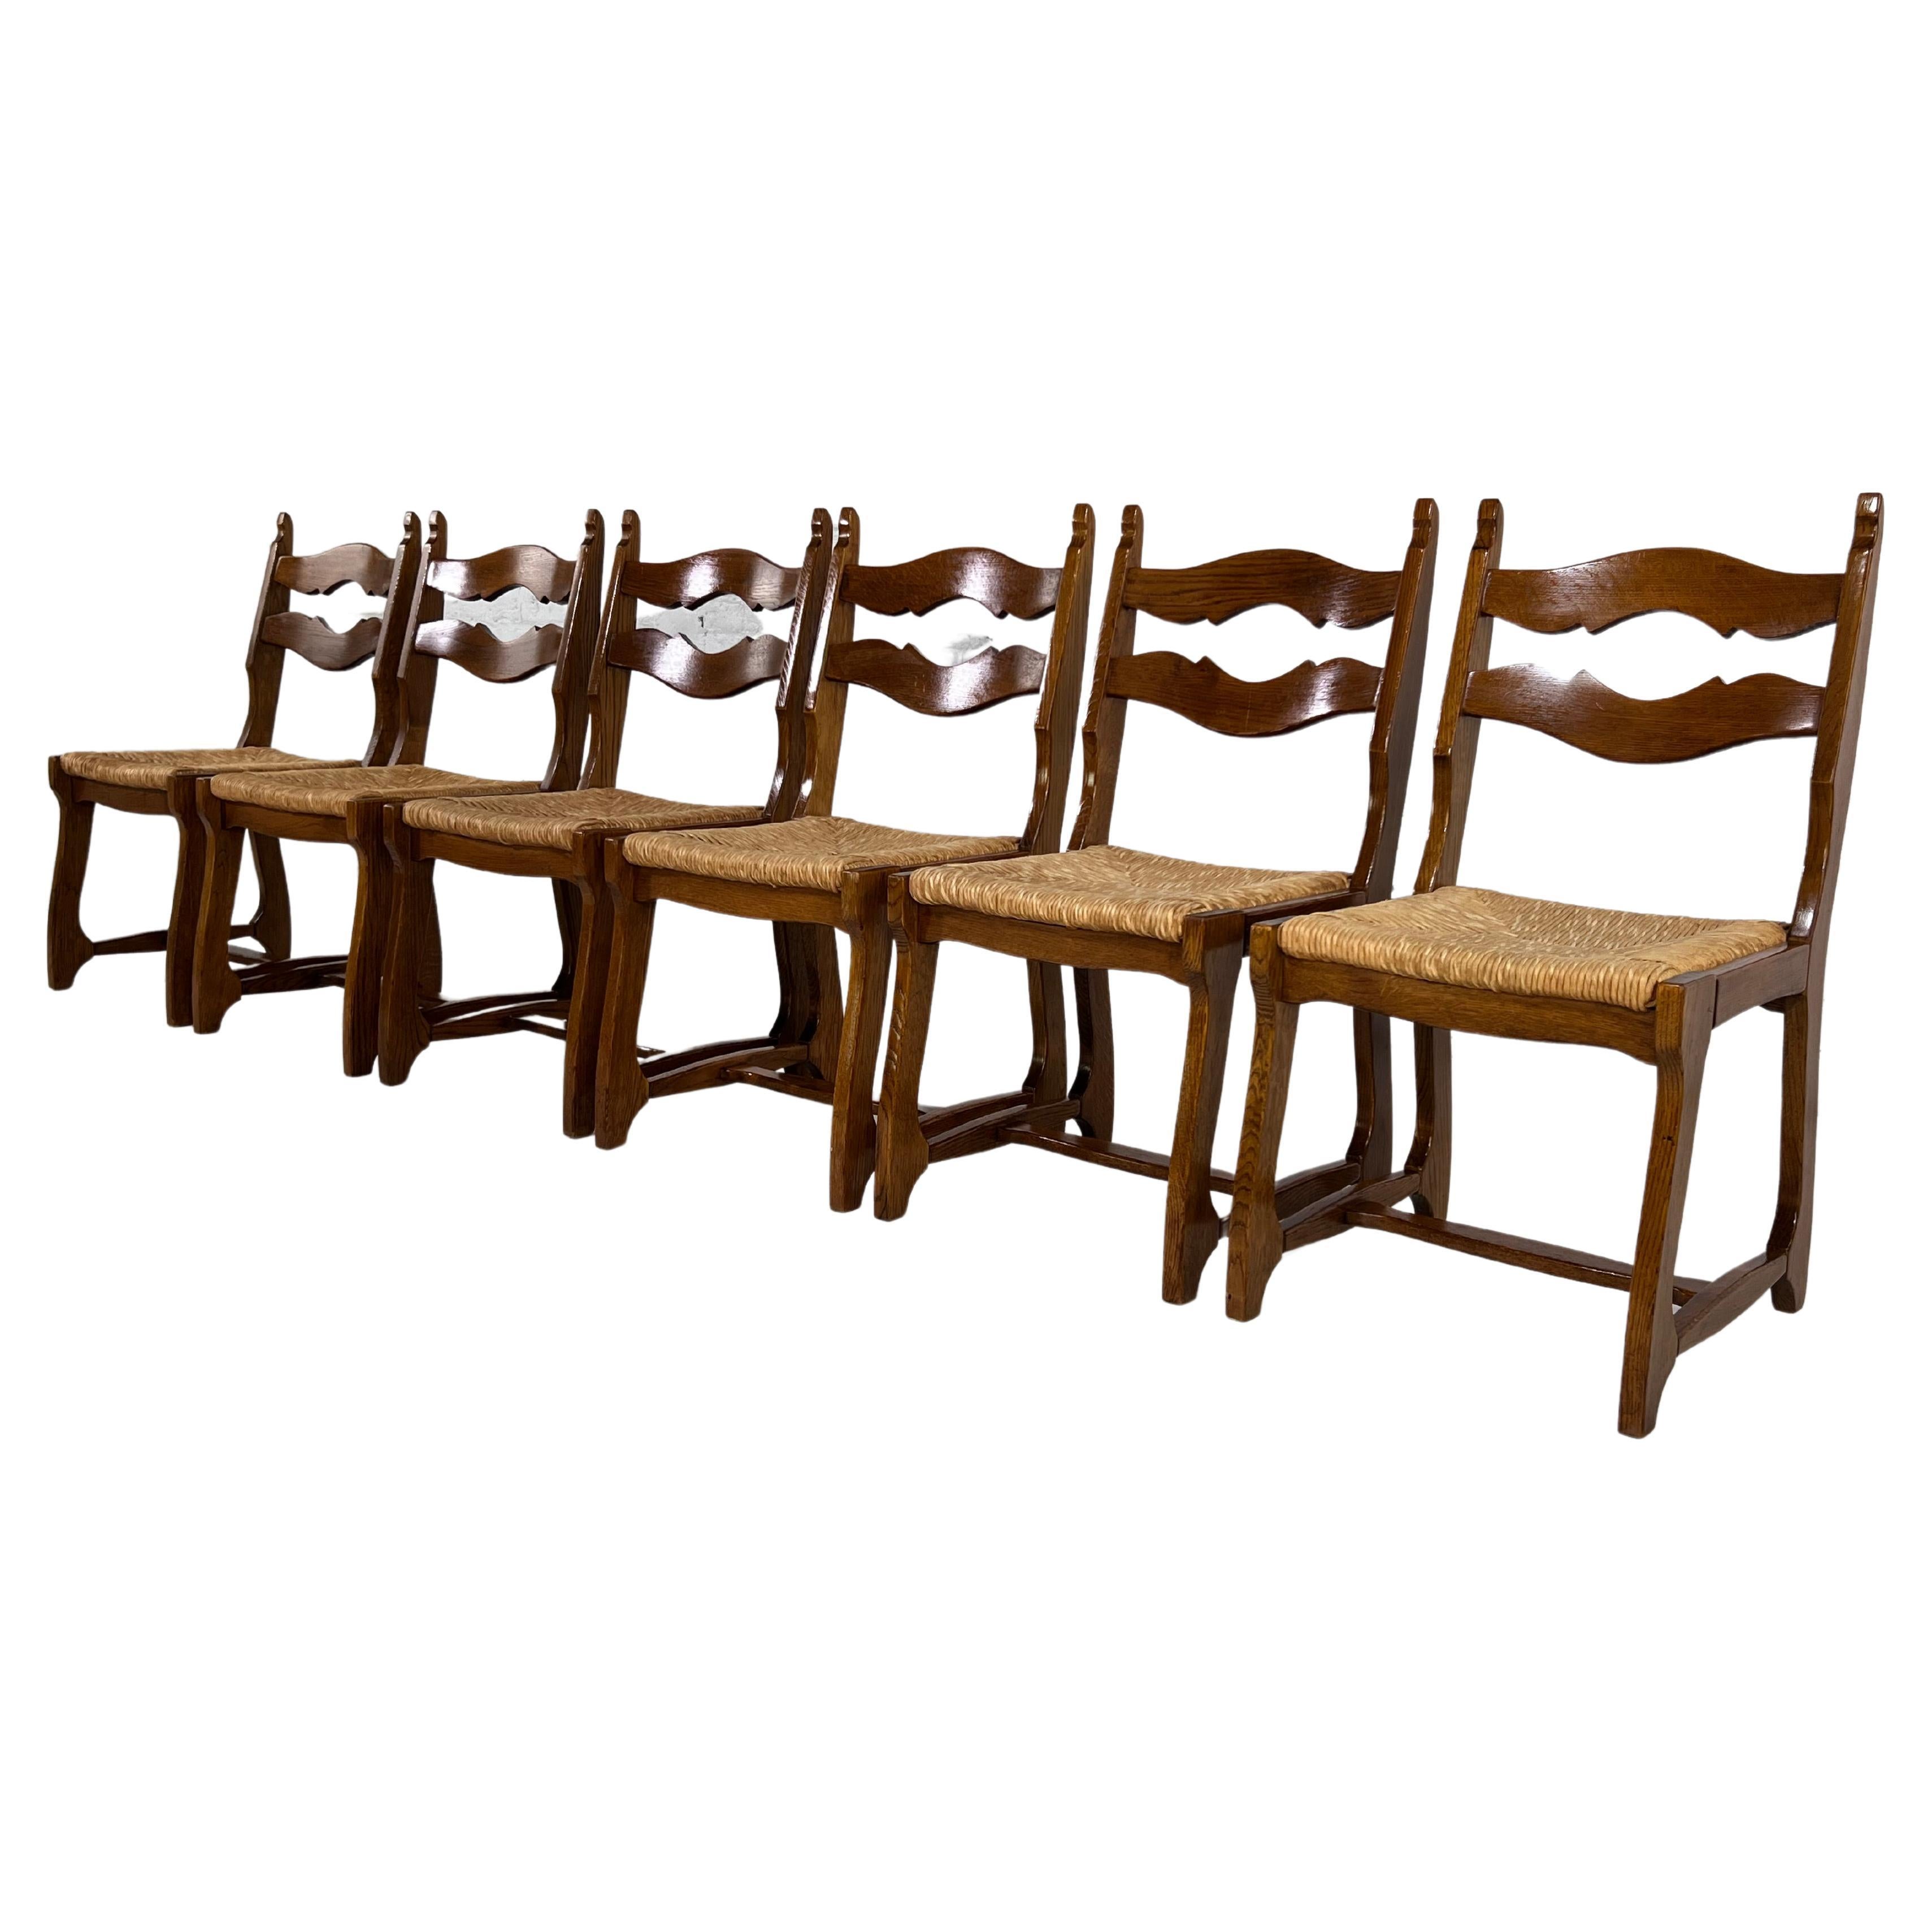 1950er Jahre Design Eiche Holz und geflochtene Strohsitze Satz von 6 Stühlen